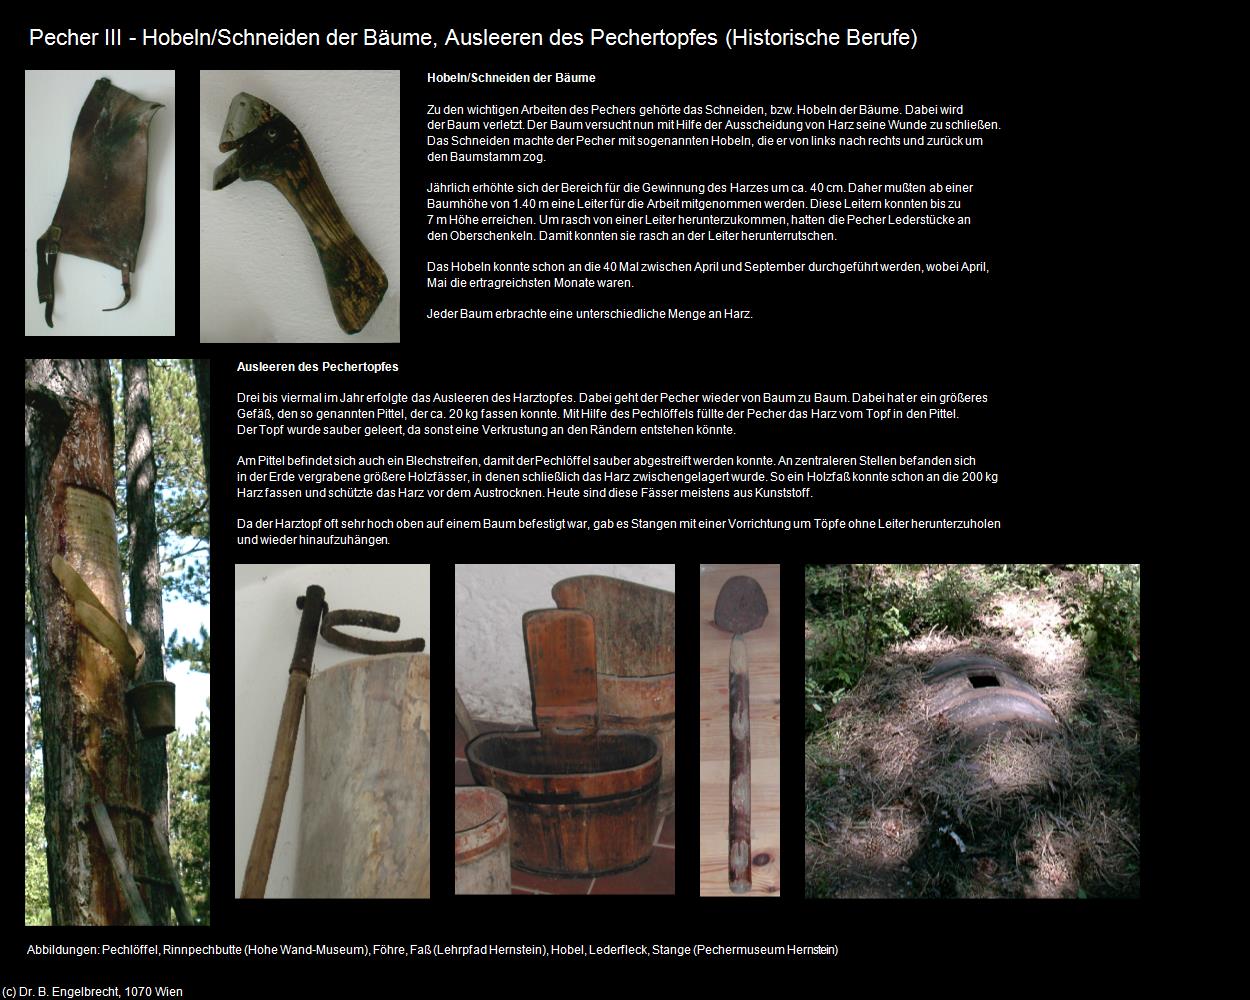 Pecher III - Hobeln der Bäume, Ausleeren des Pechertopfes (Pecher) in Leben-und-Arbeiten-einst